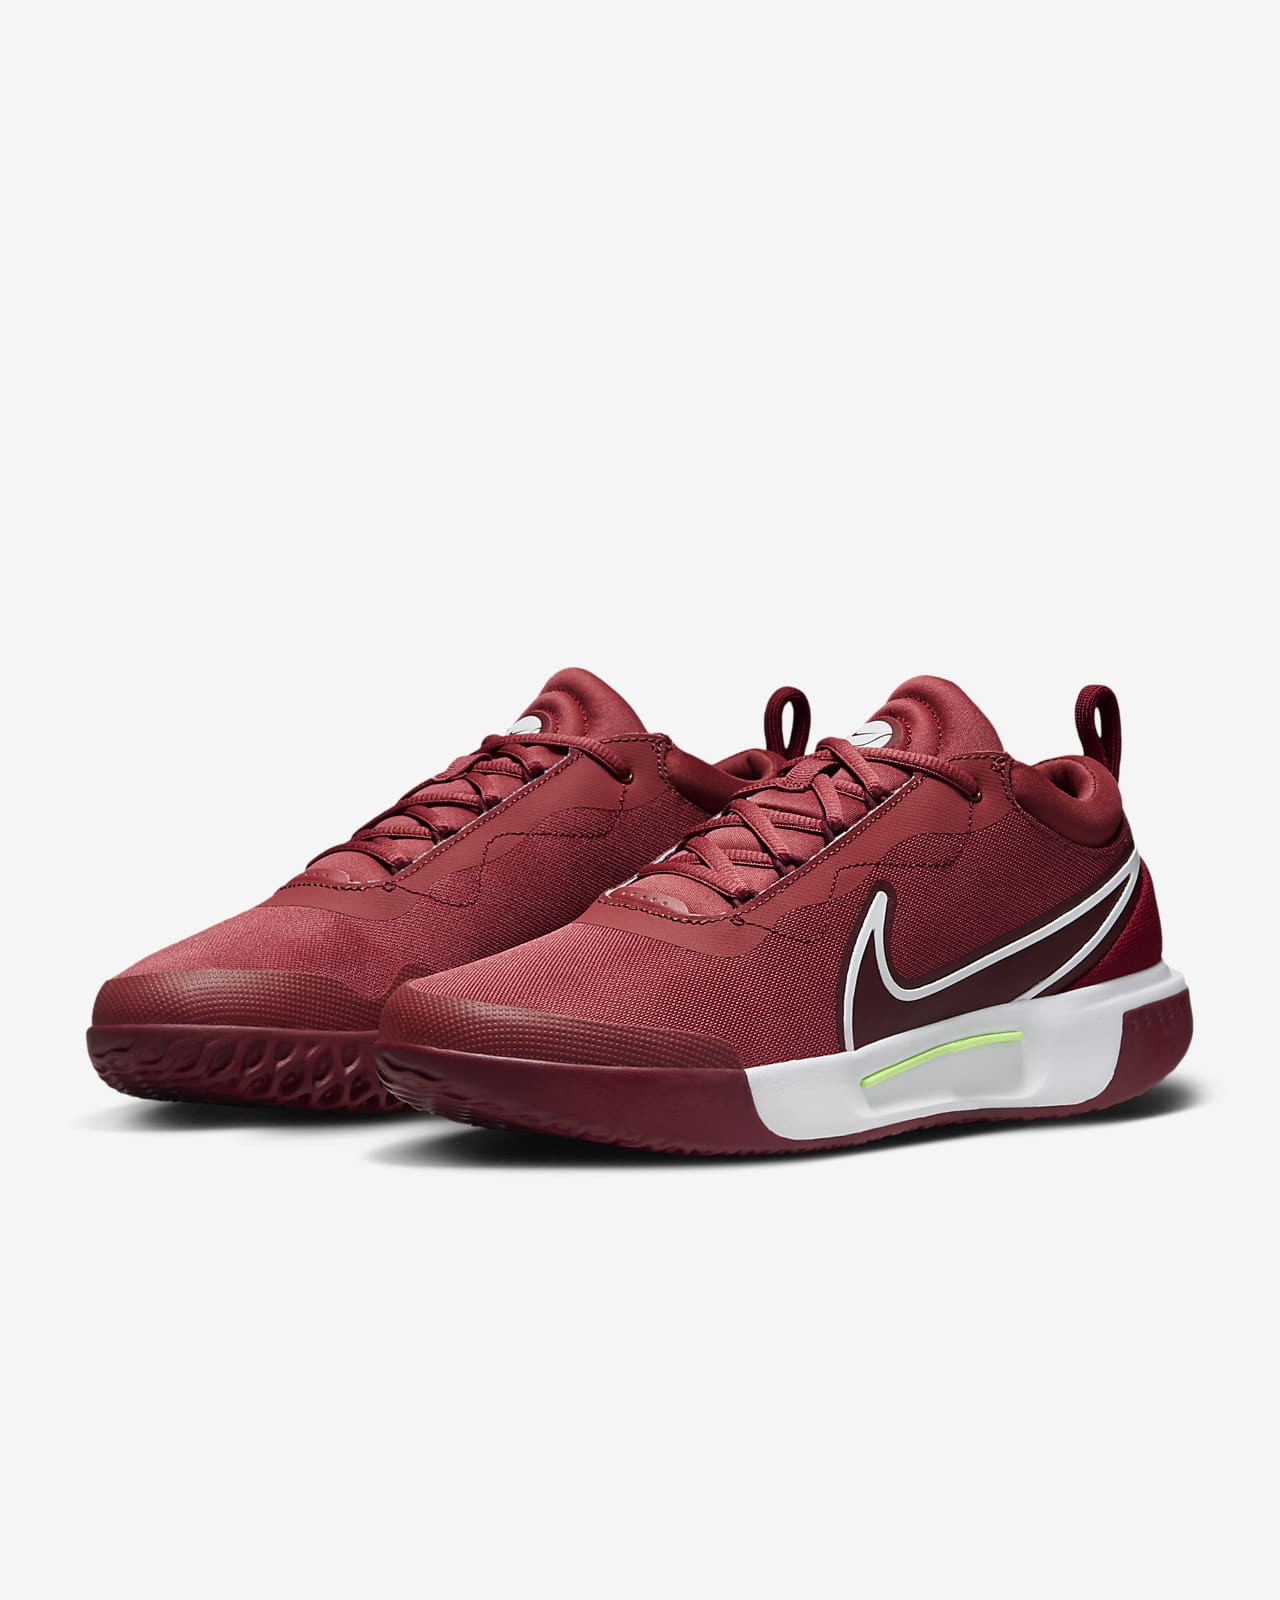 Chaussures de tennis Nike NikeCourt Pro pour Homme - DH2603